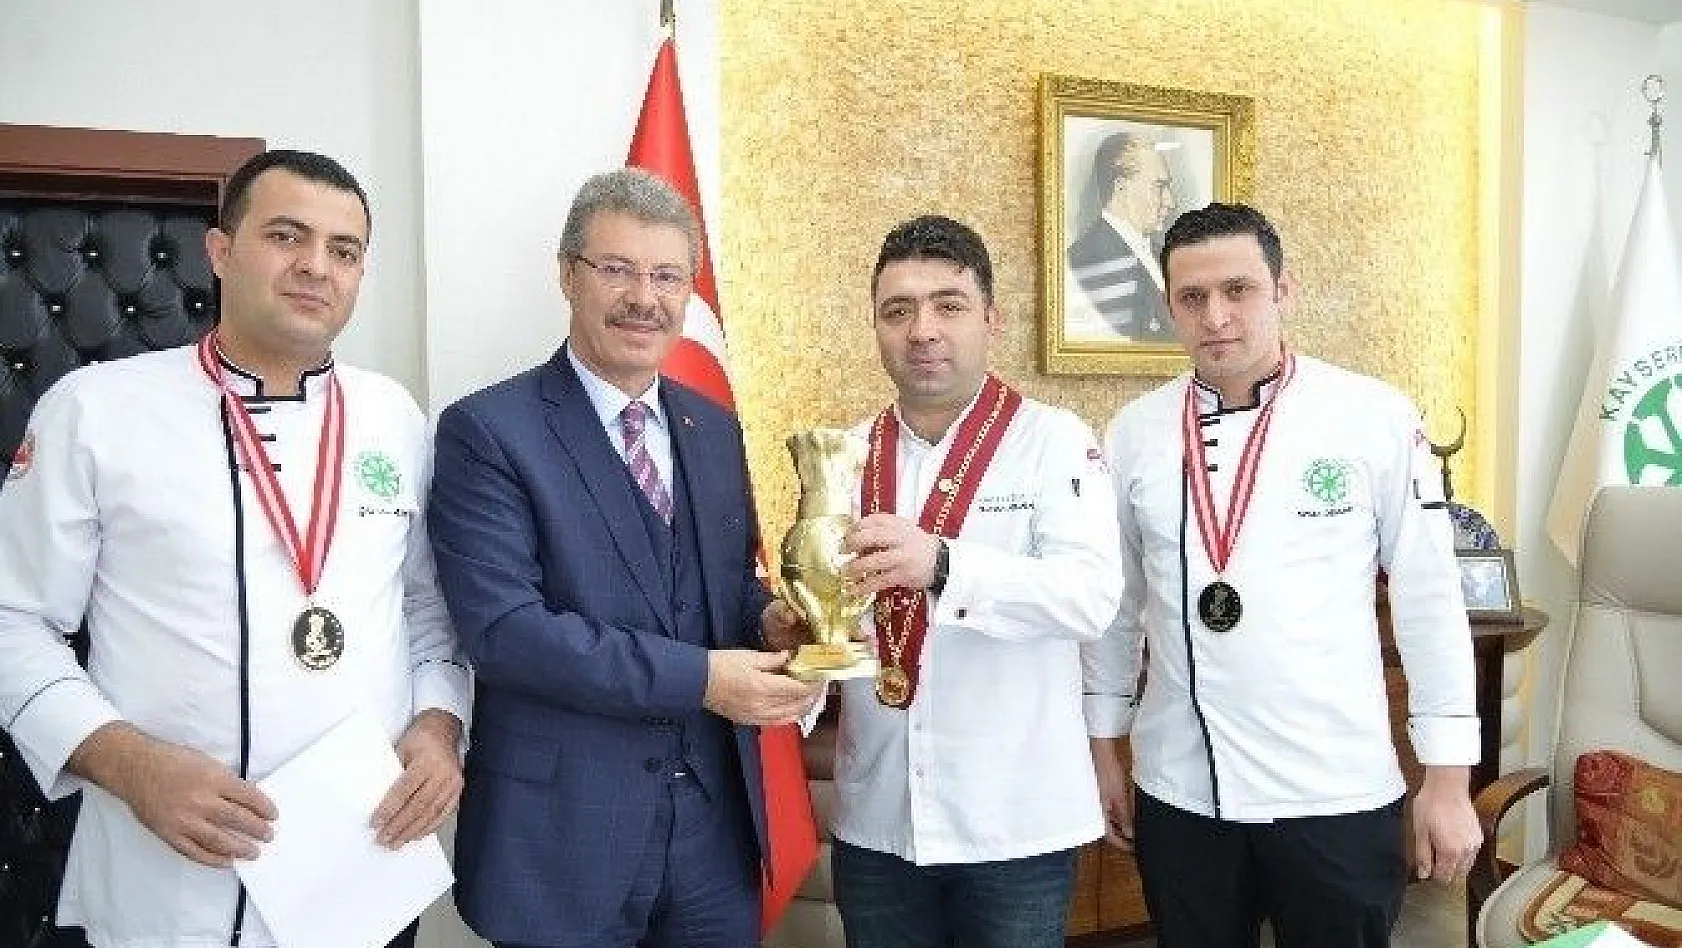 Ulusal Modern Türk Mutfağı Yemek Yarışması'nda Kayseri Şeker Aşçıları Birinci Oldu